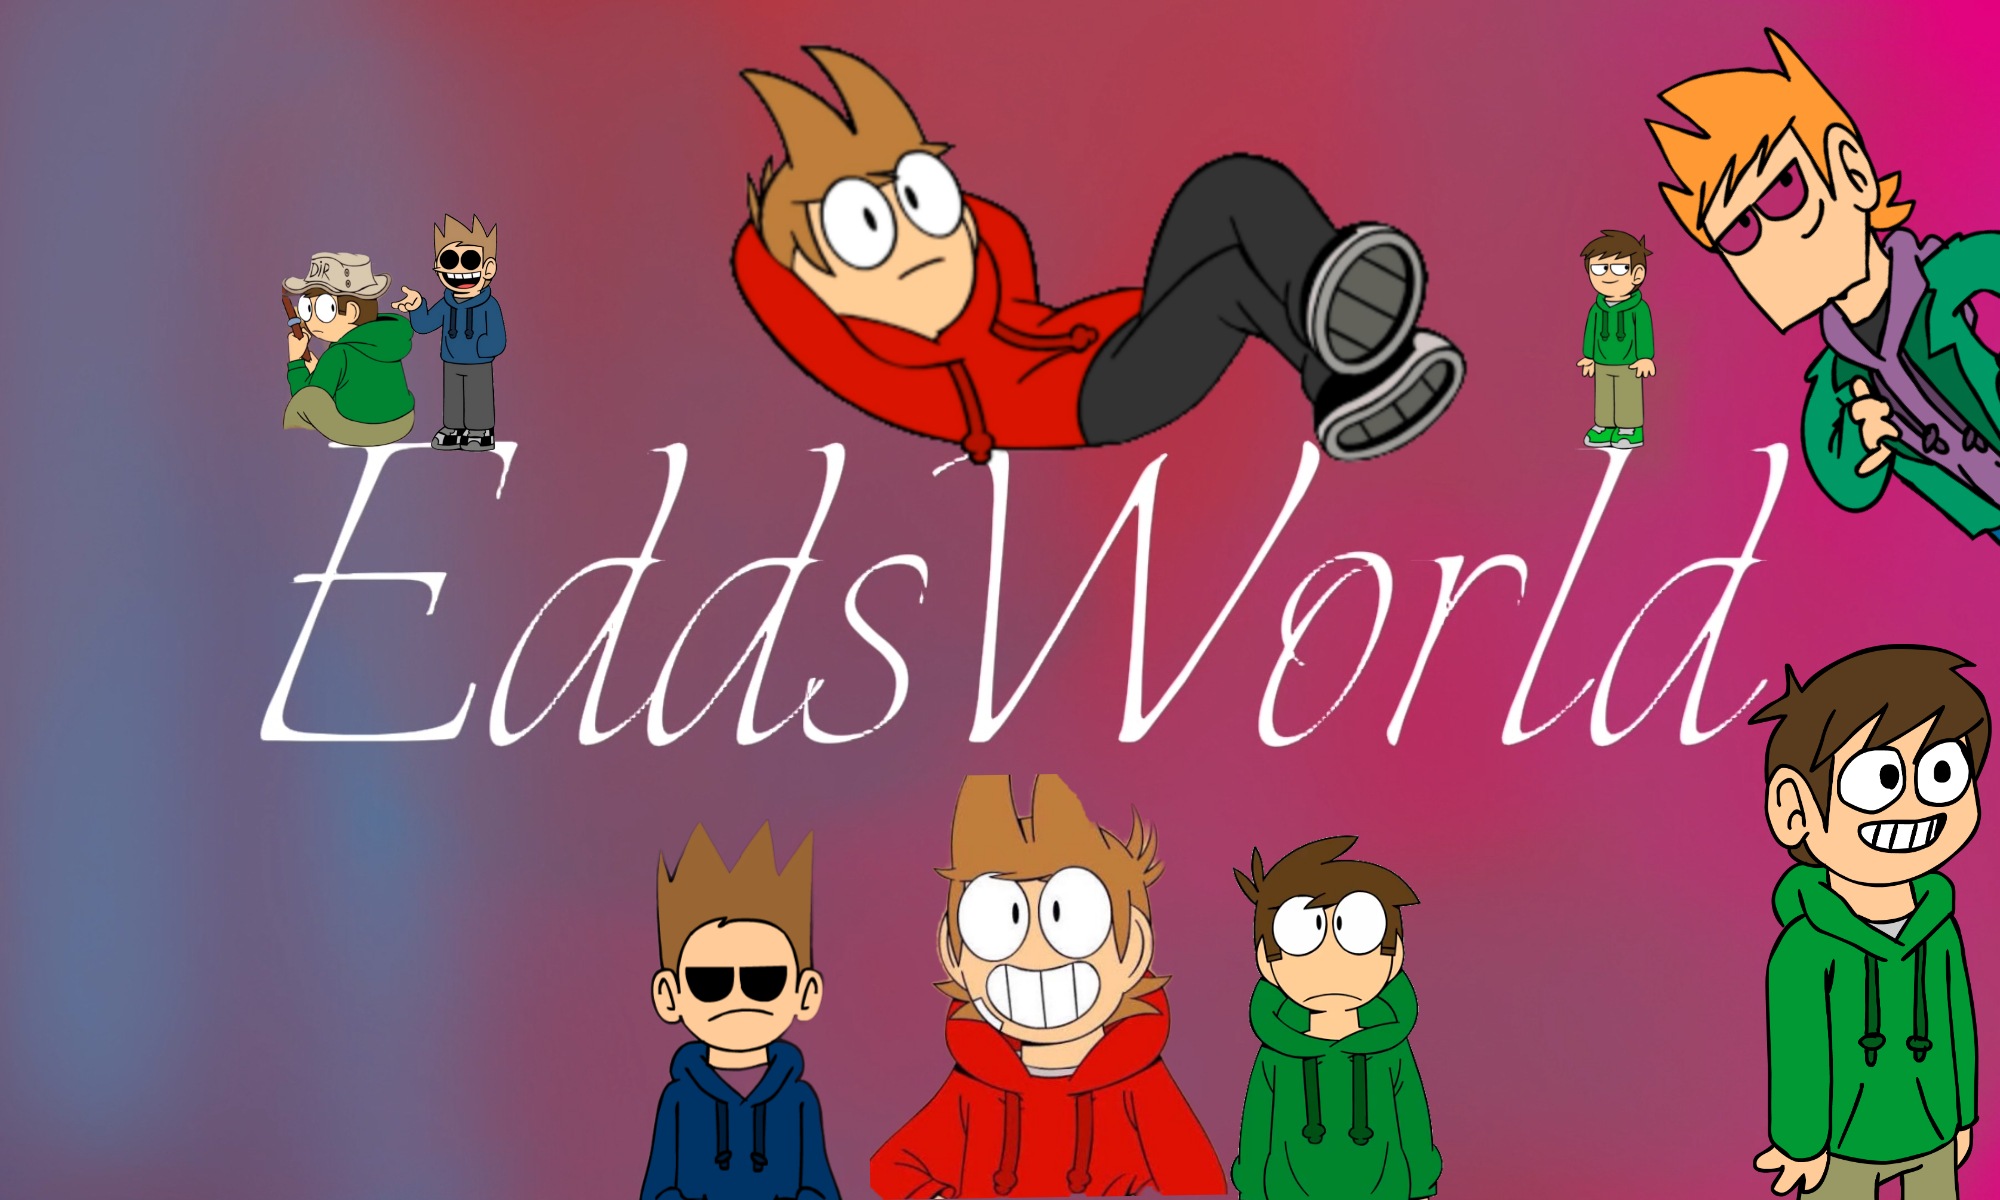 Eddsworld- Matt wallpaper by SenpaiChan0 - Download on ZEDGE™